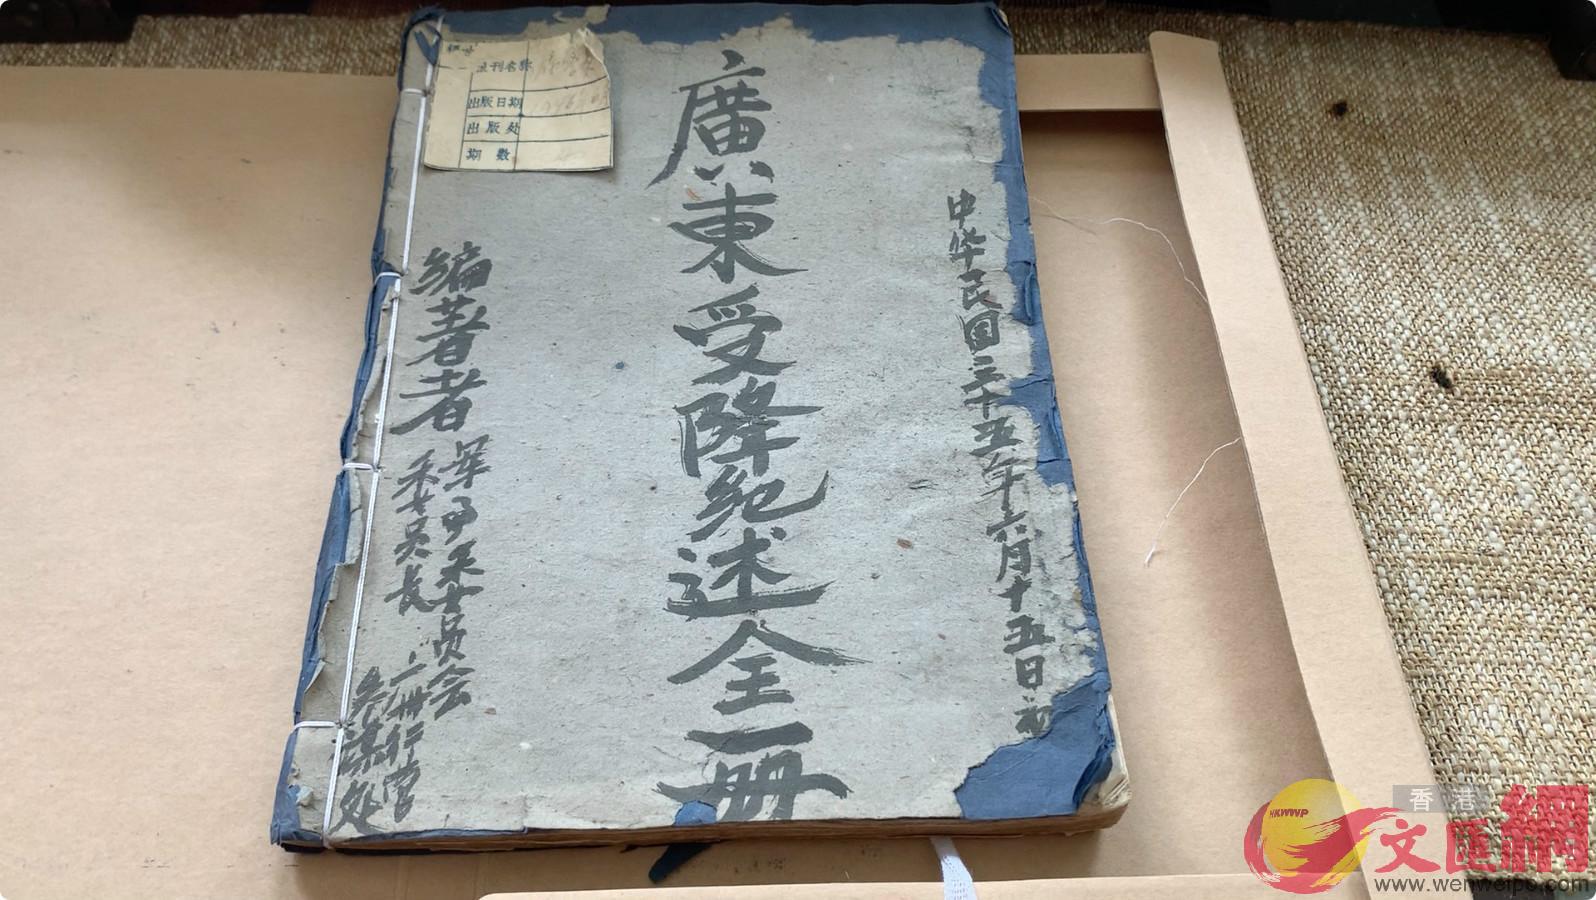 此次對外公開的m廣東受降紀述]全一冊^nA現保存在抗戰文物收藏家張廣勝位於瀋陽的工作室中C]香港文匯網記者 于珈琳 攝^ 